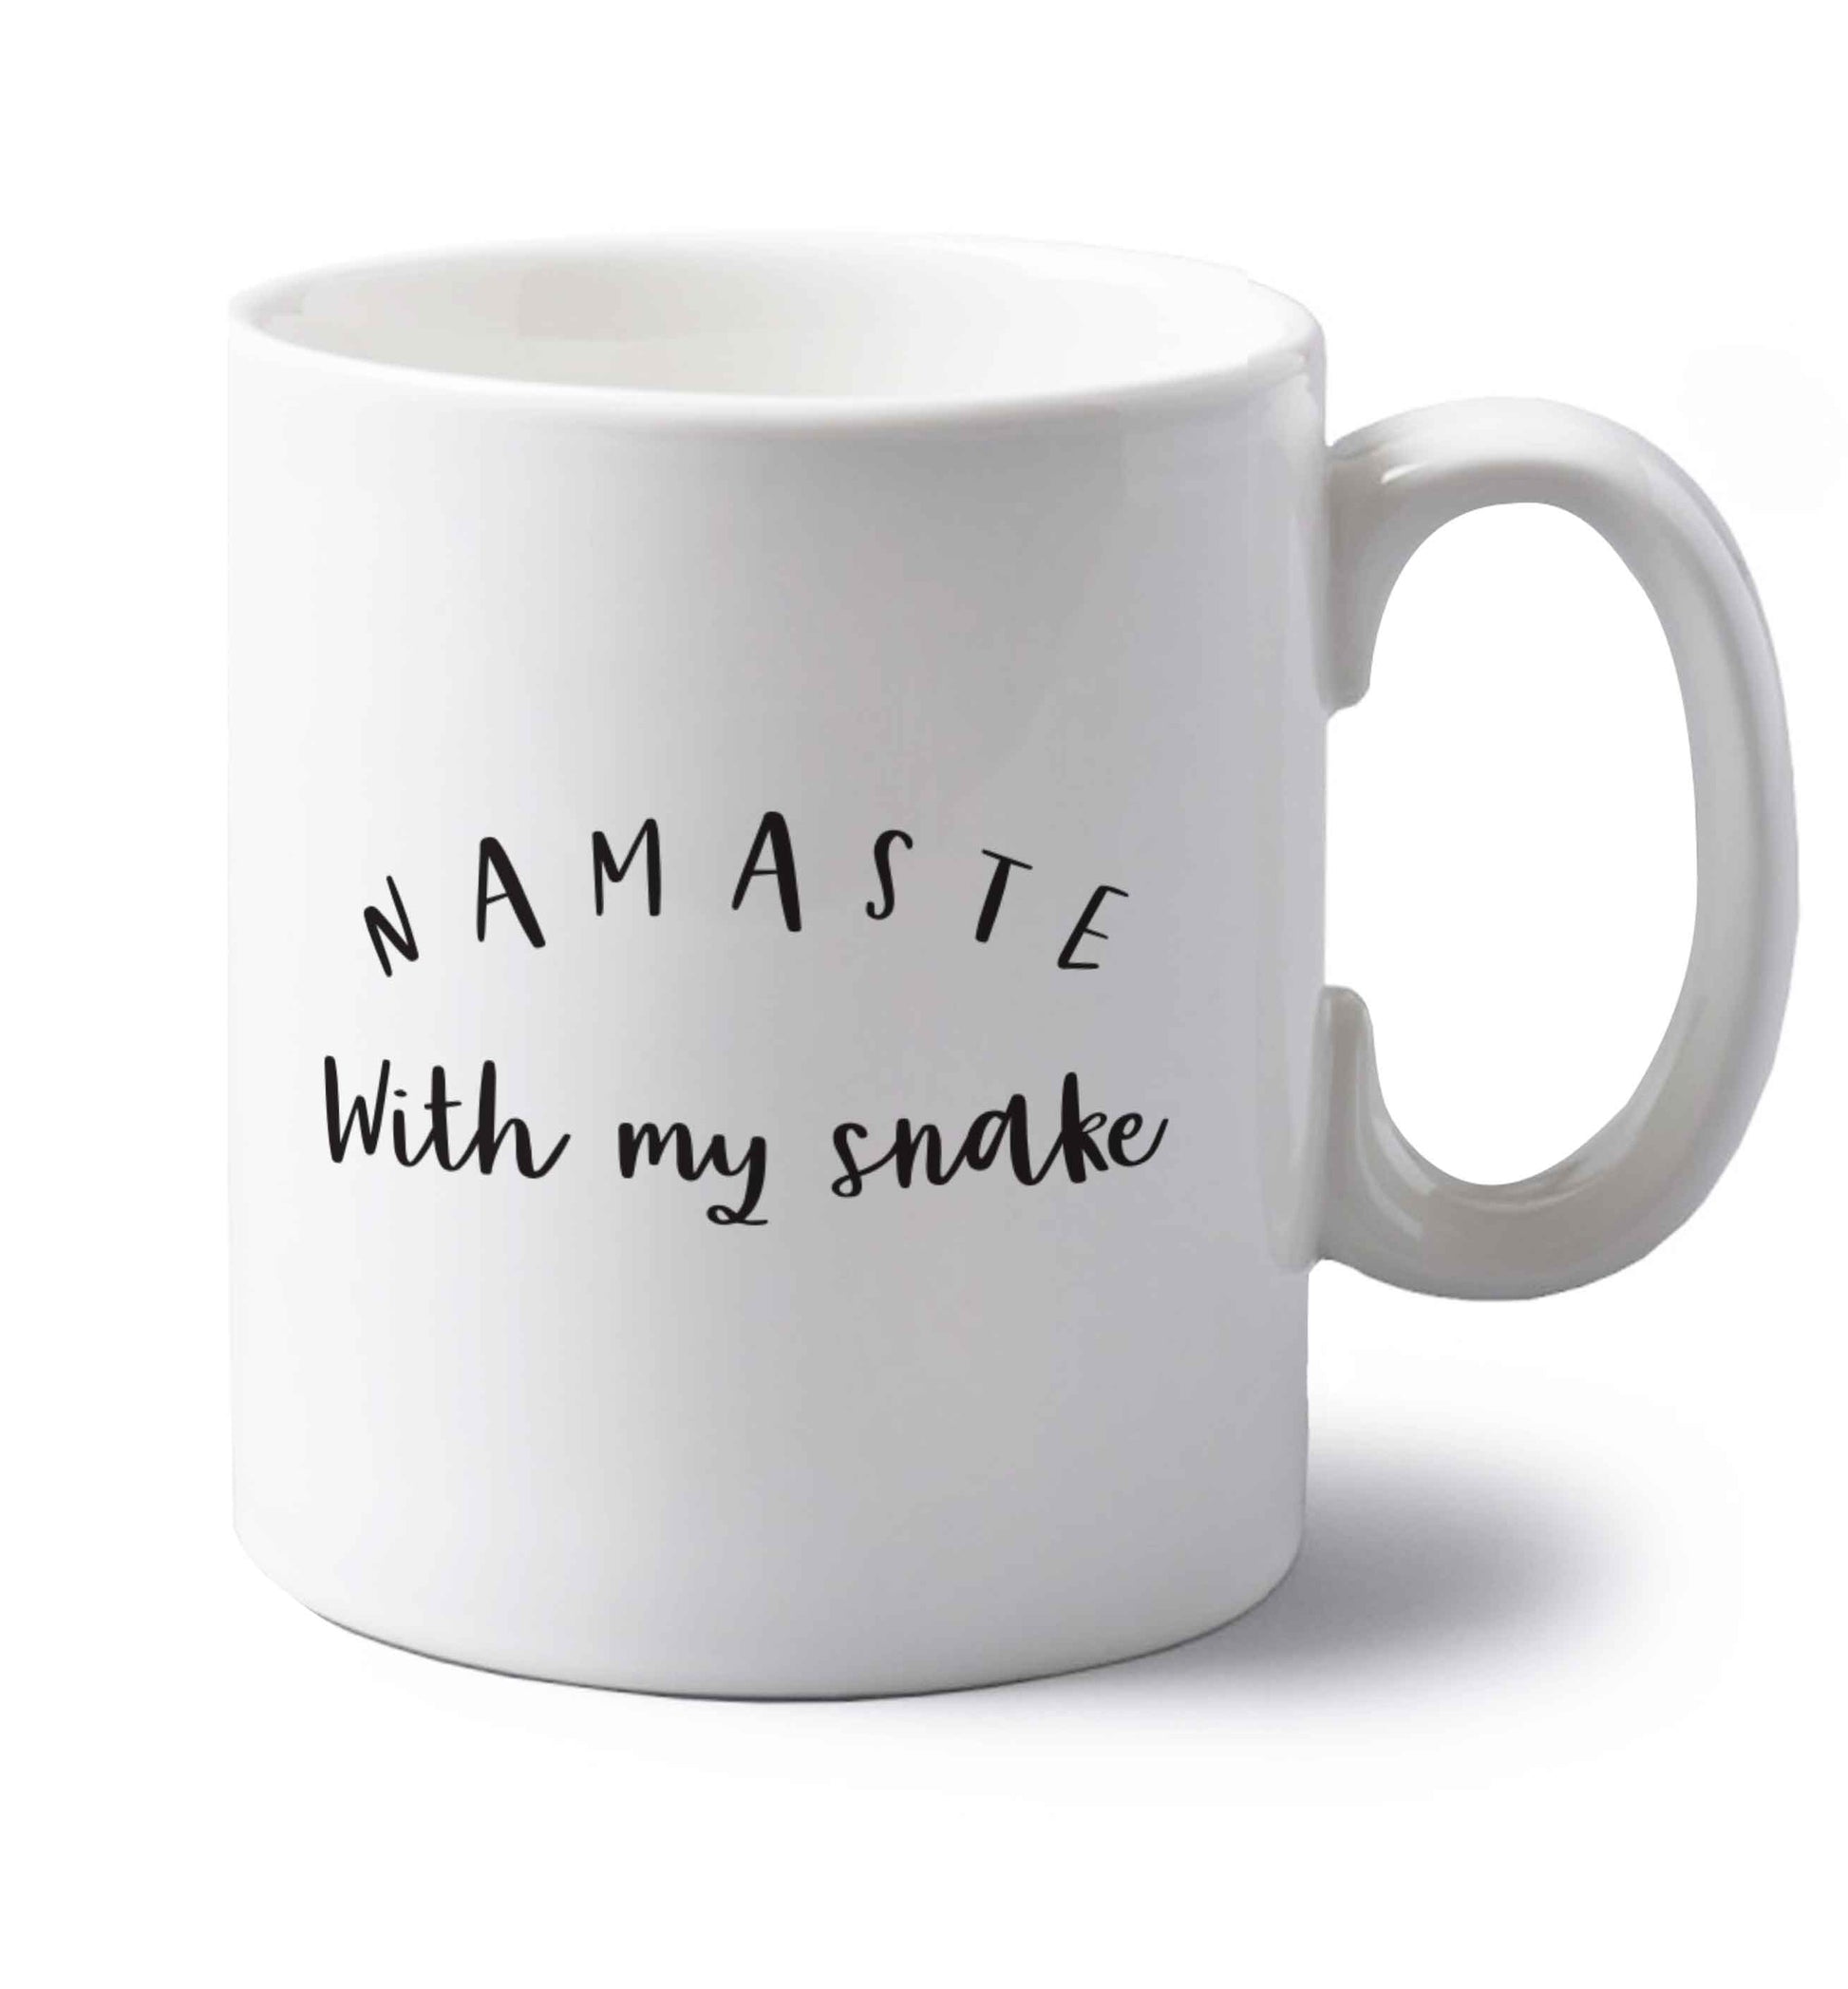 Namaste with my snake left handed white ceramic mug 